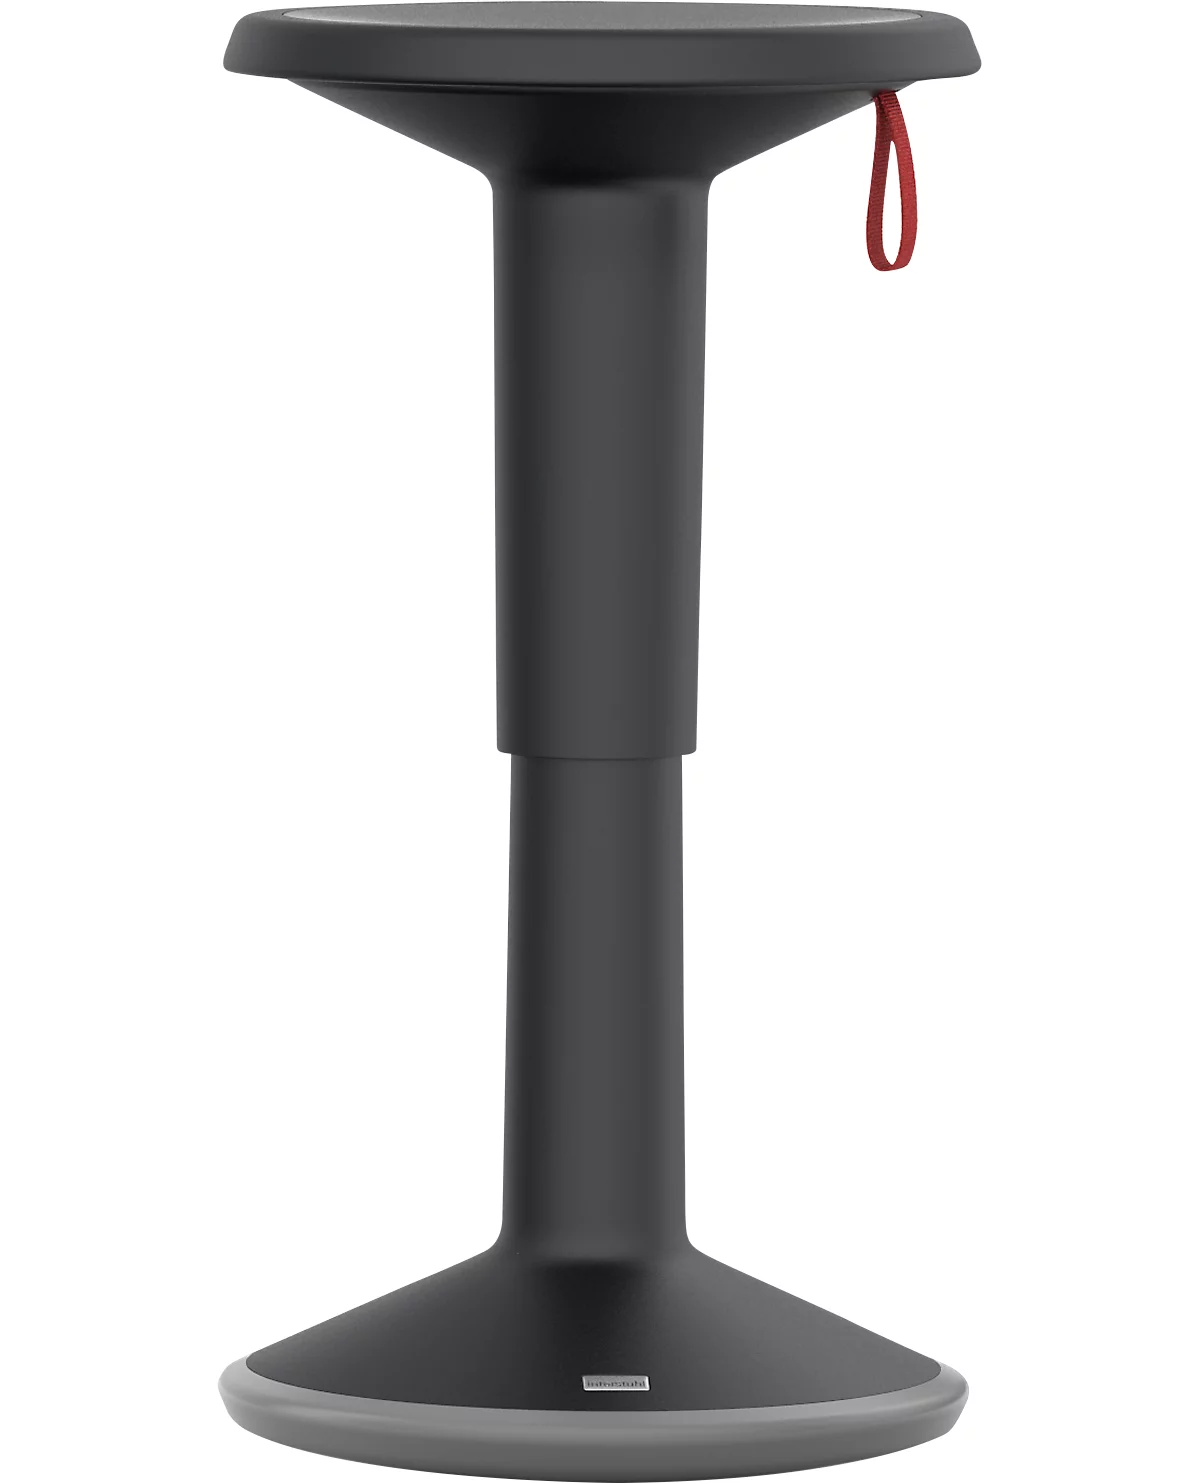 Taburete ajustable en altura UPis1, Ø 330 x H 450 - 630 mm, negro